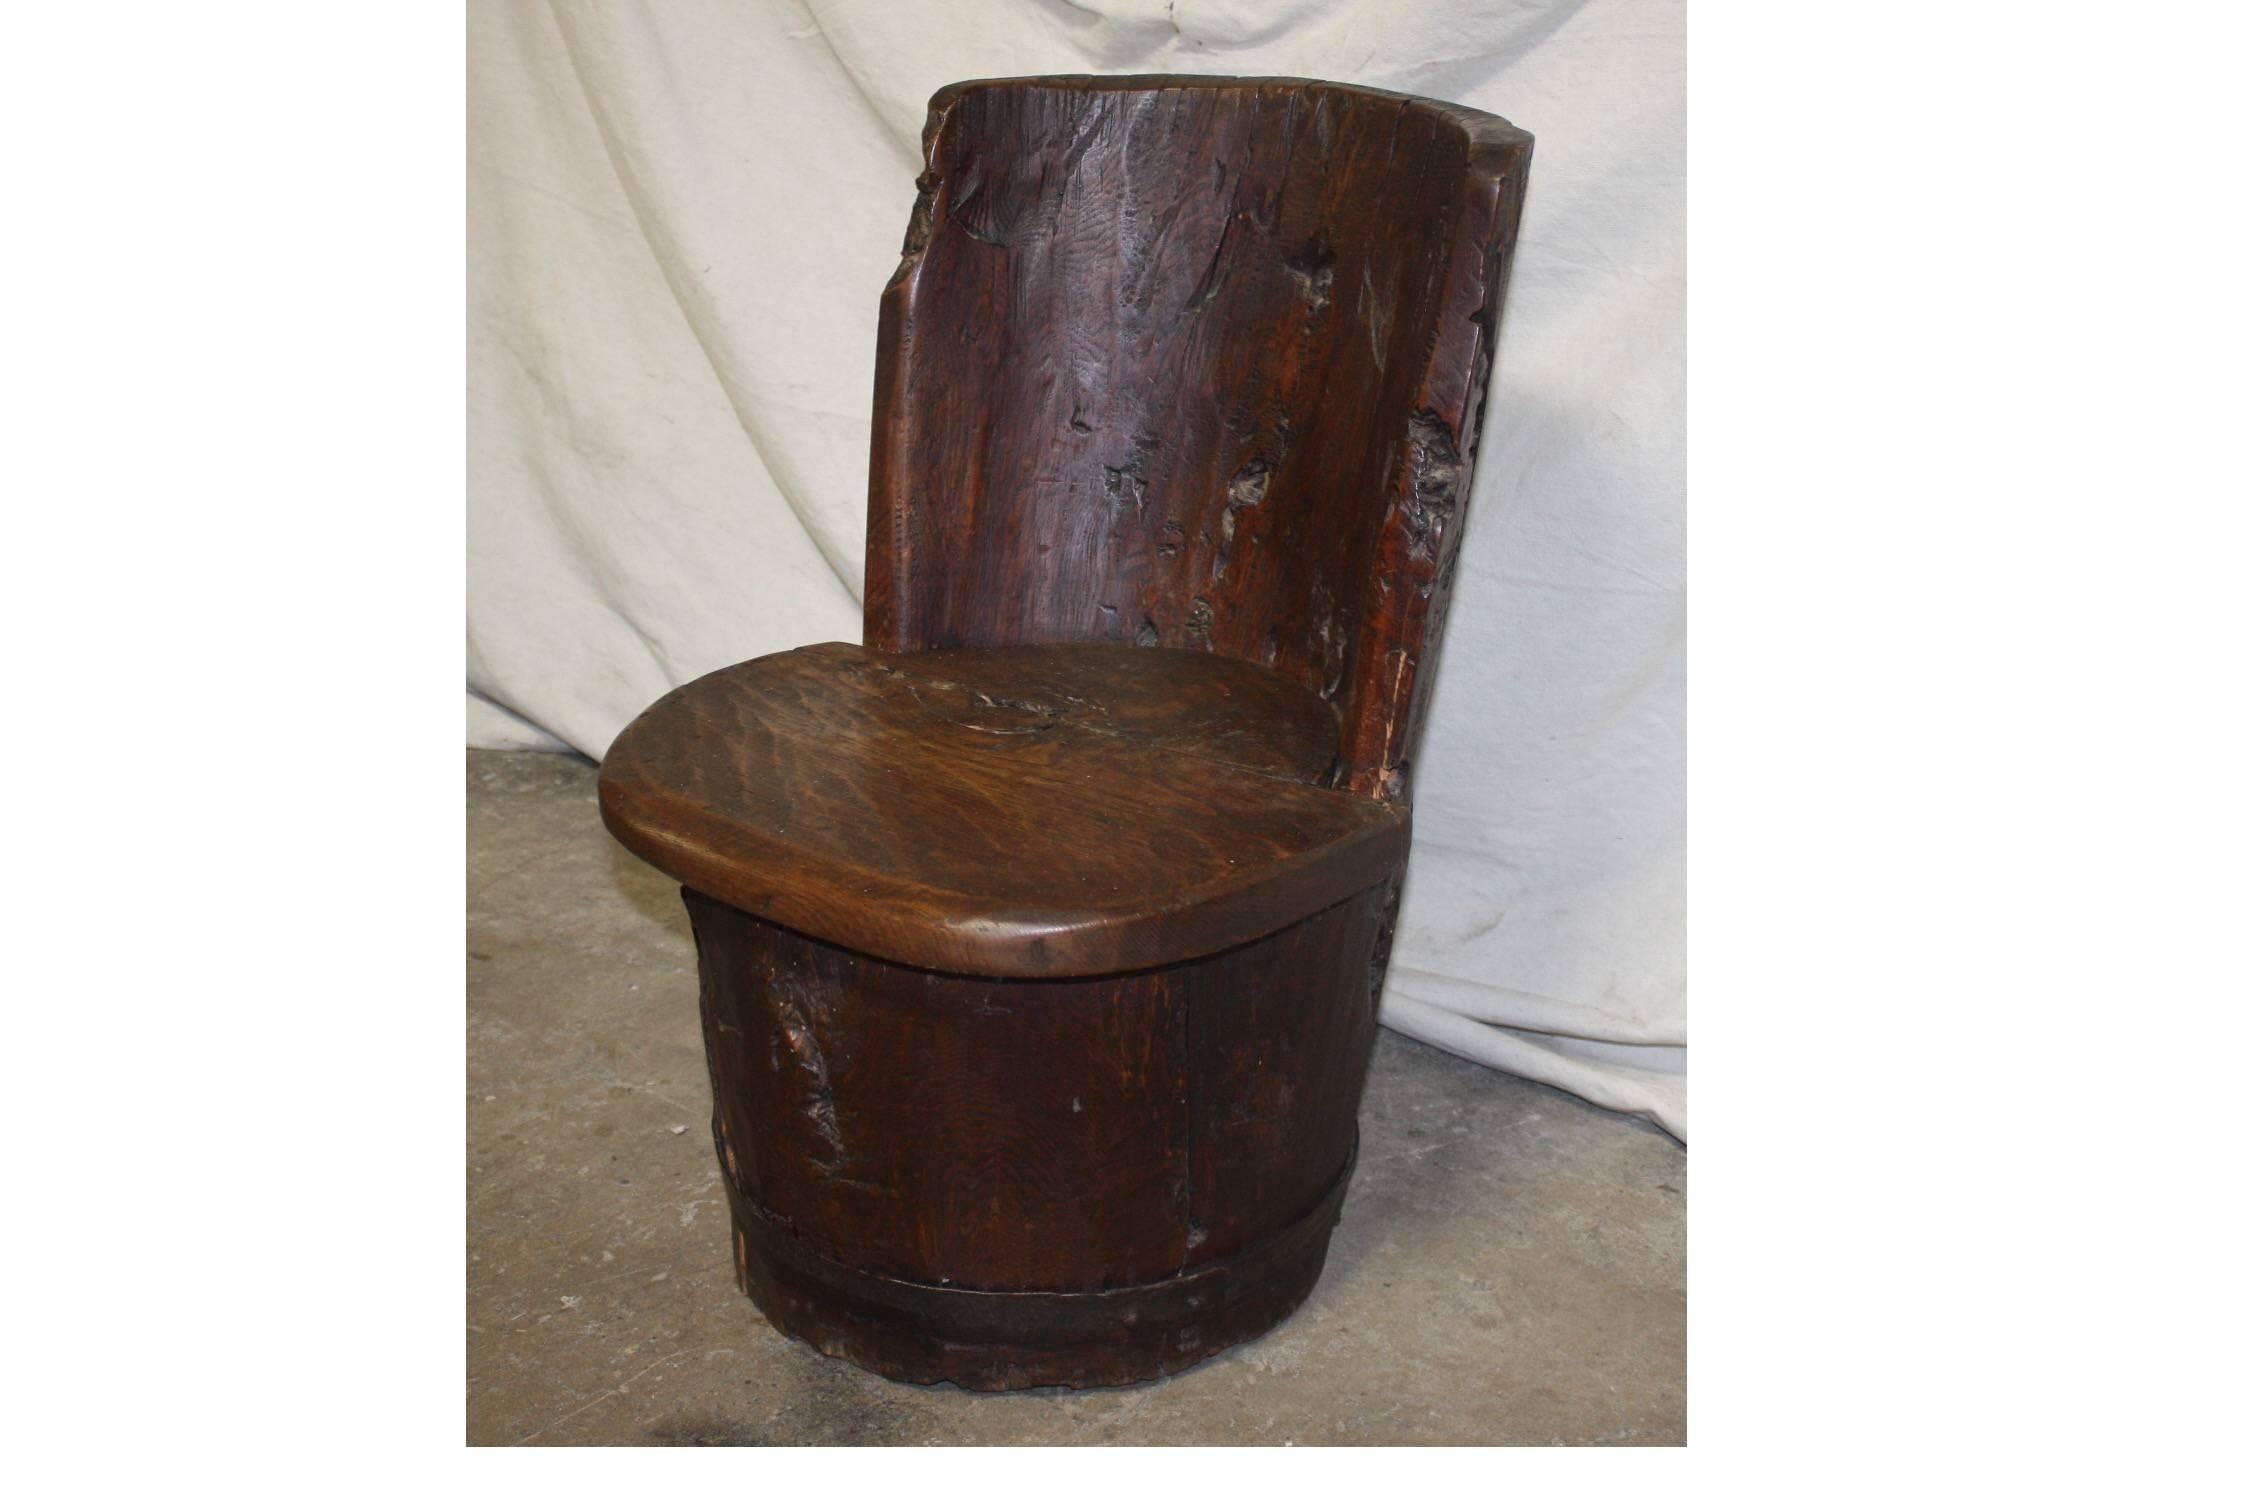 primitive chair